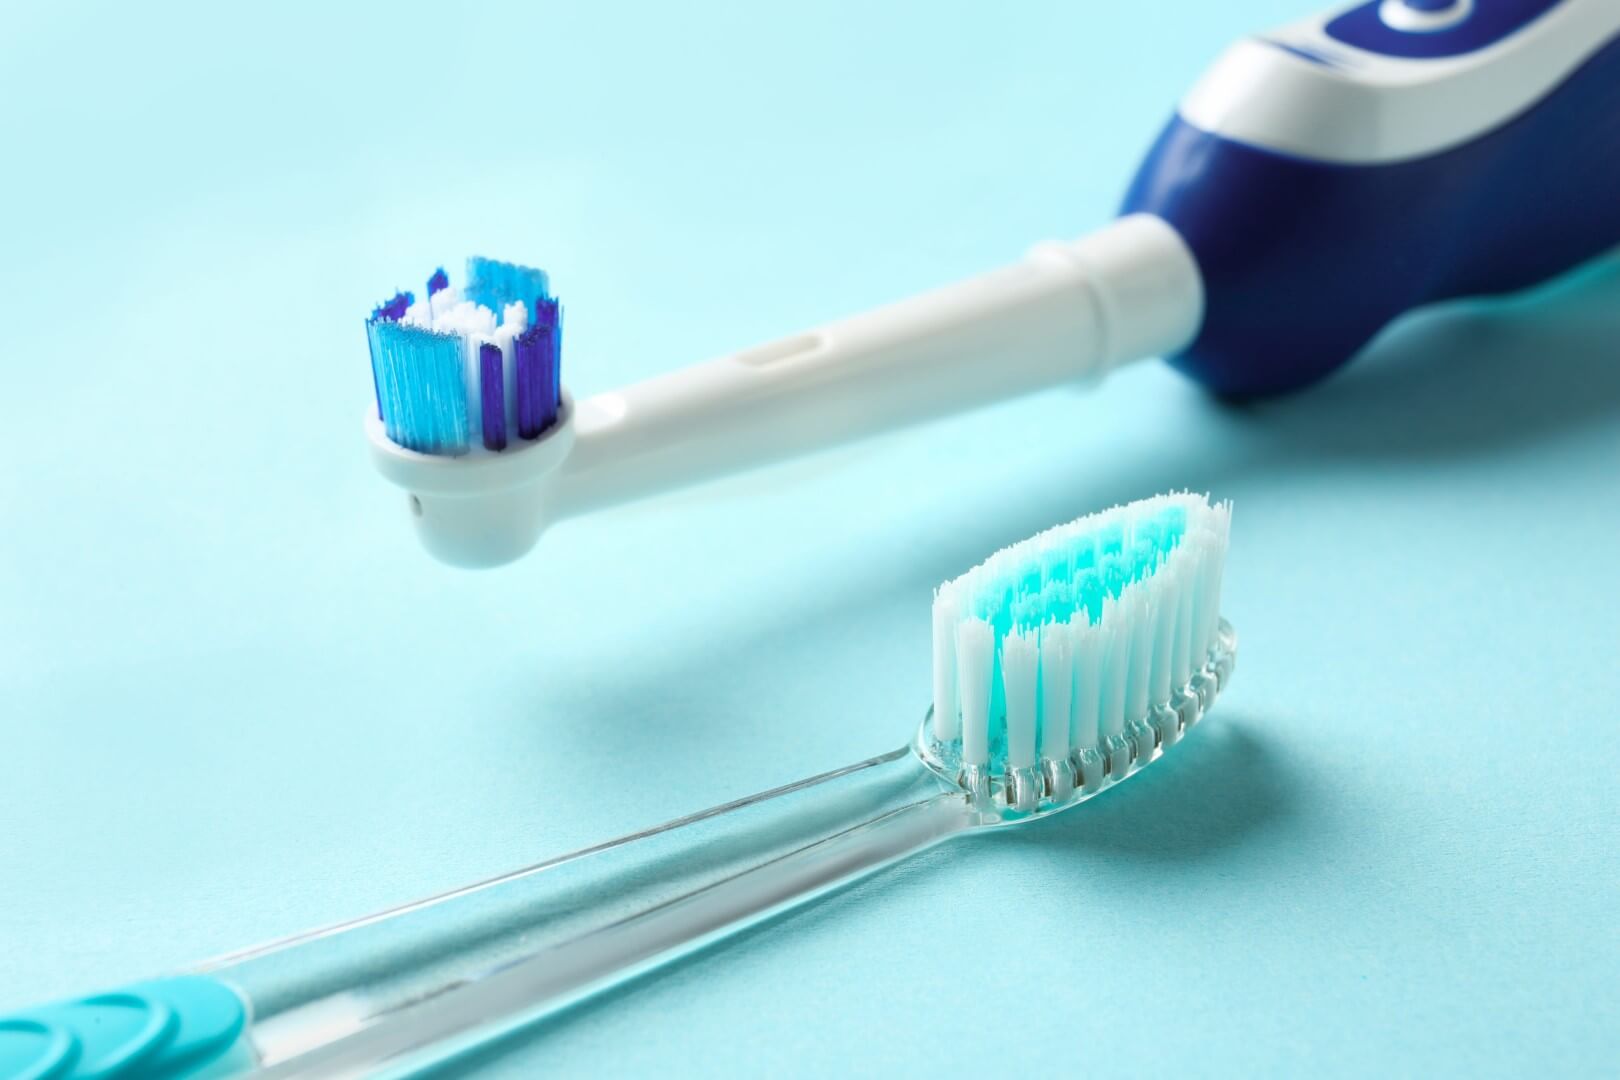 Cepillo dental manual vs eléctrico para limpieza dental en niños, ¿Cuál es  mejor? - Dentispro